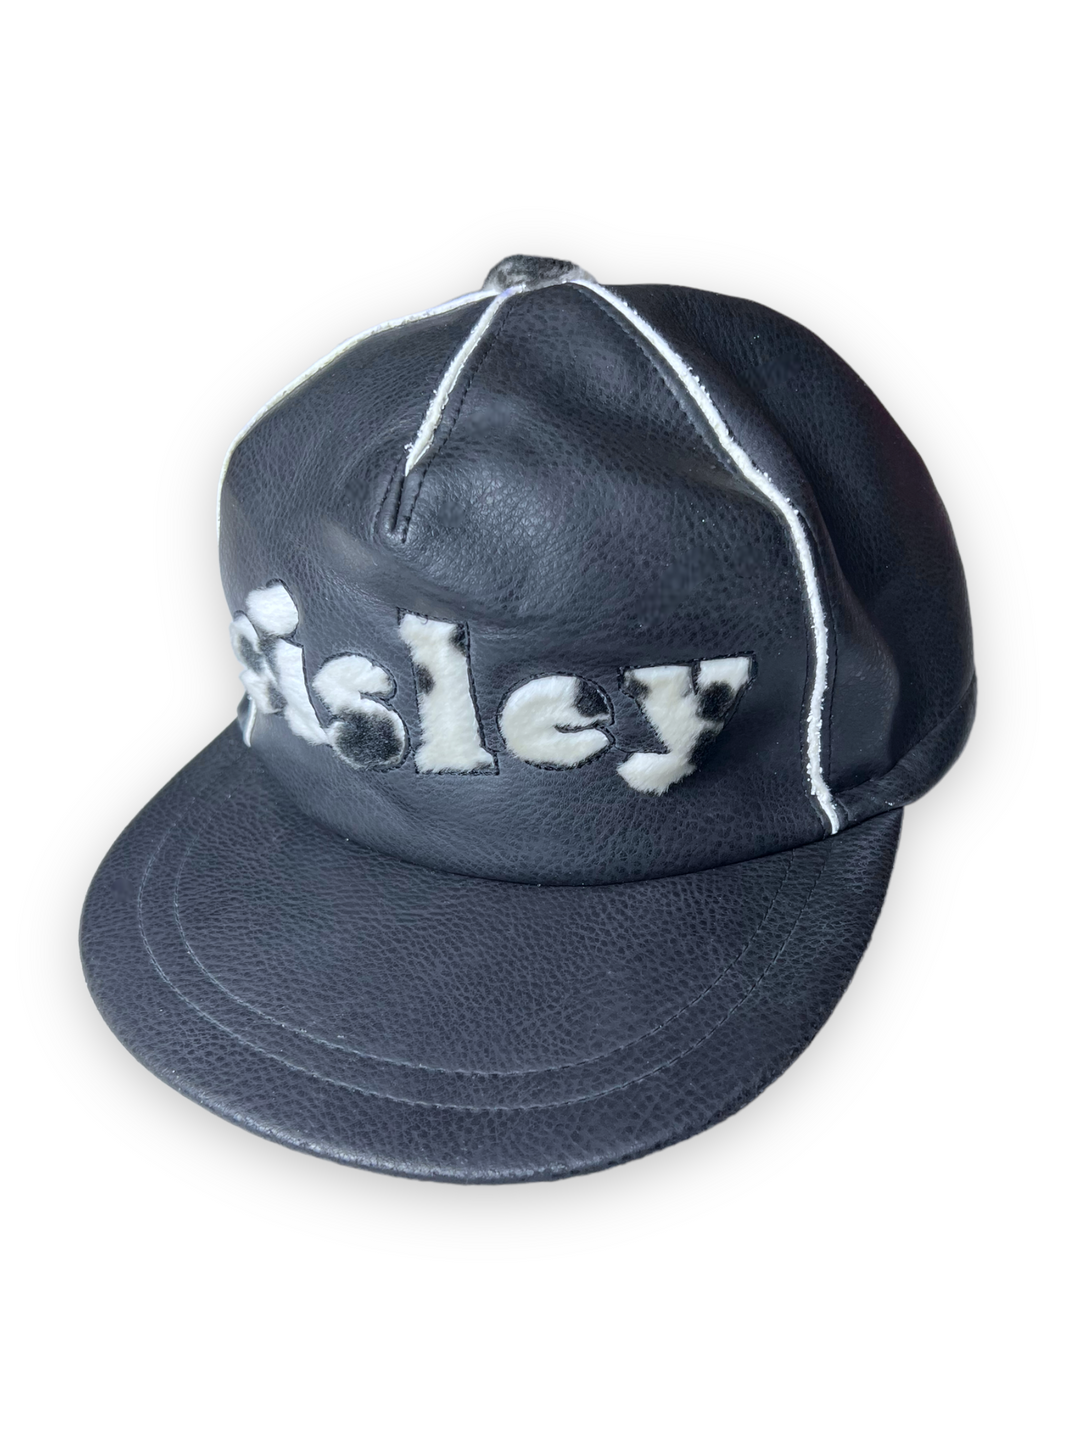 SISLEY PVC Hat